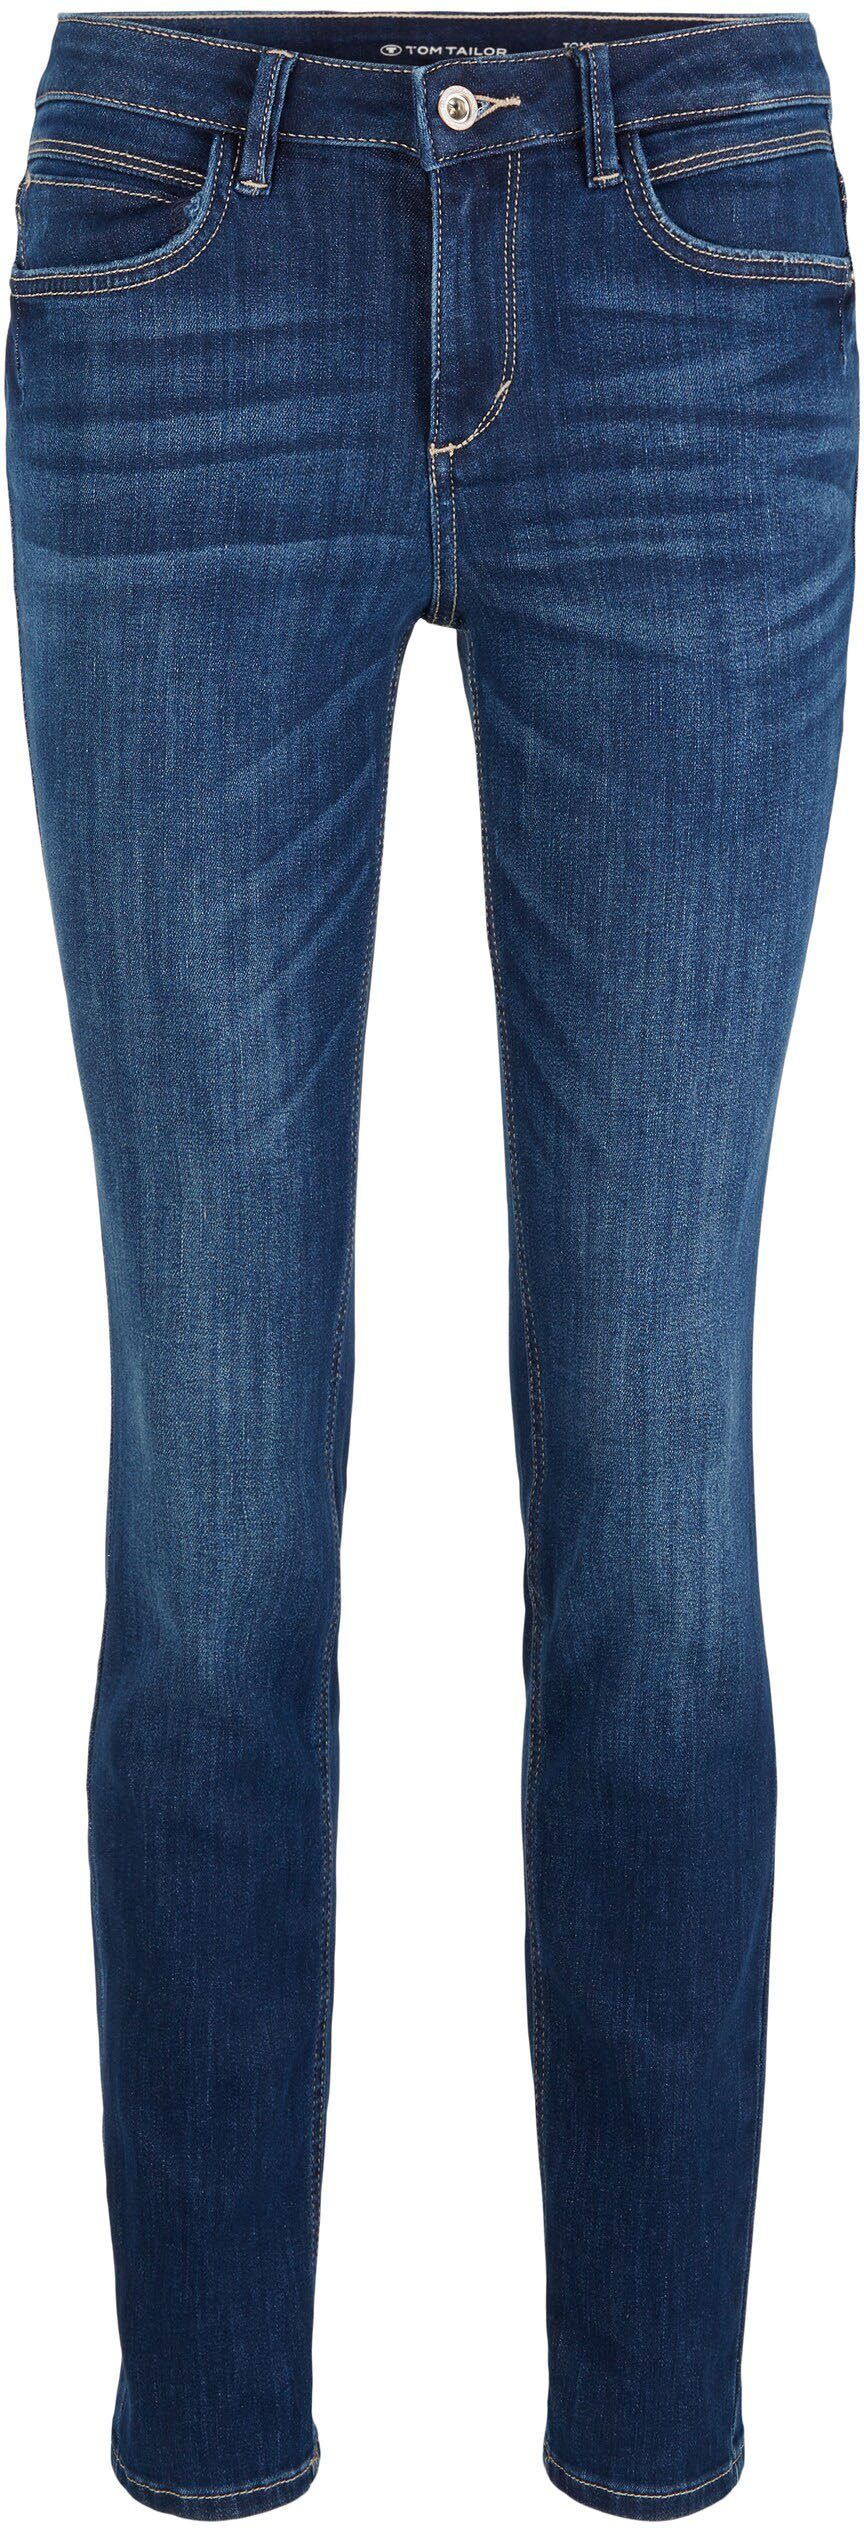 Tom Tailor Jeans online kaufen | OTTO